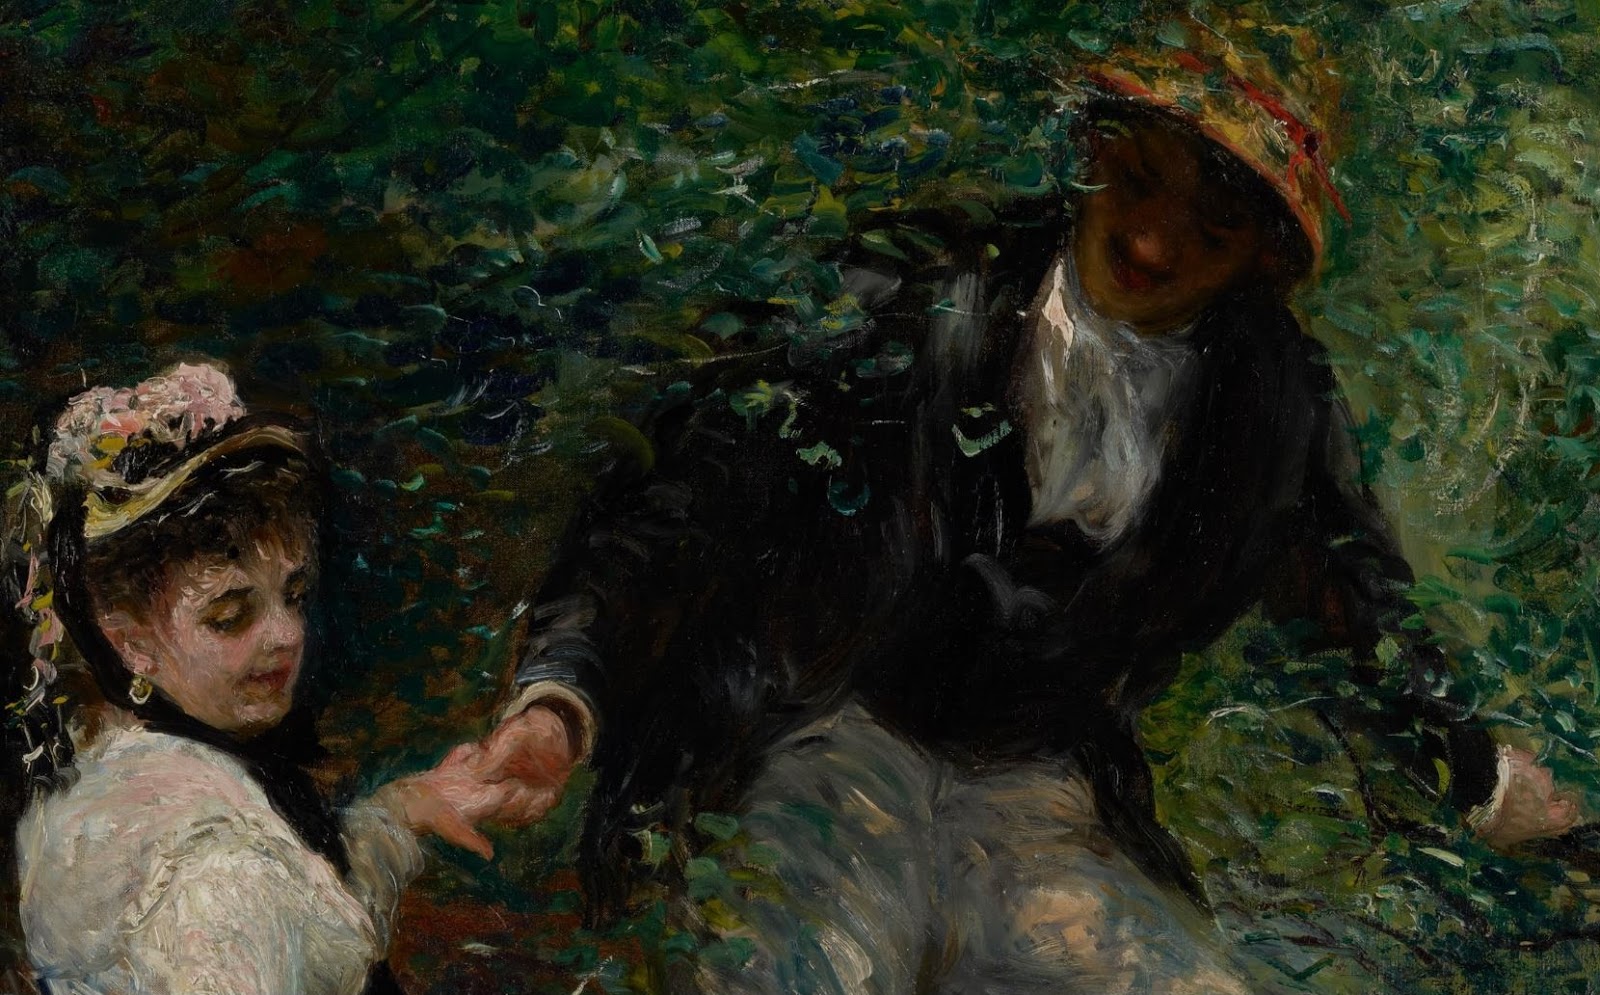 Pierre+Auguste+Renoir-1841-1-19 (270).JPG